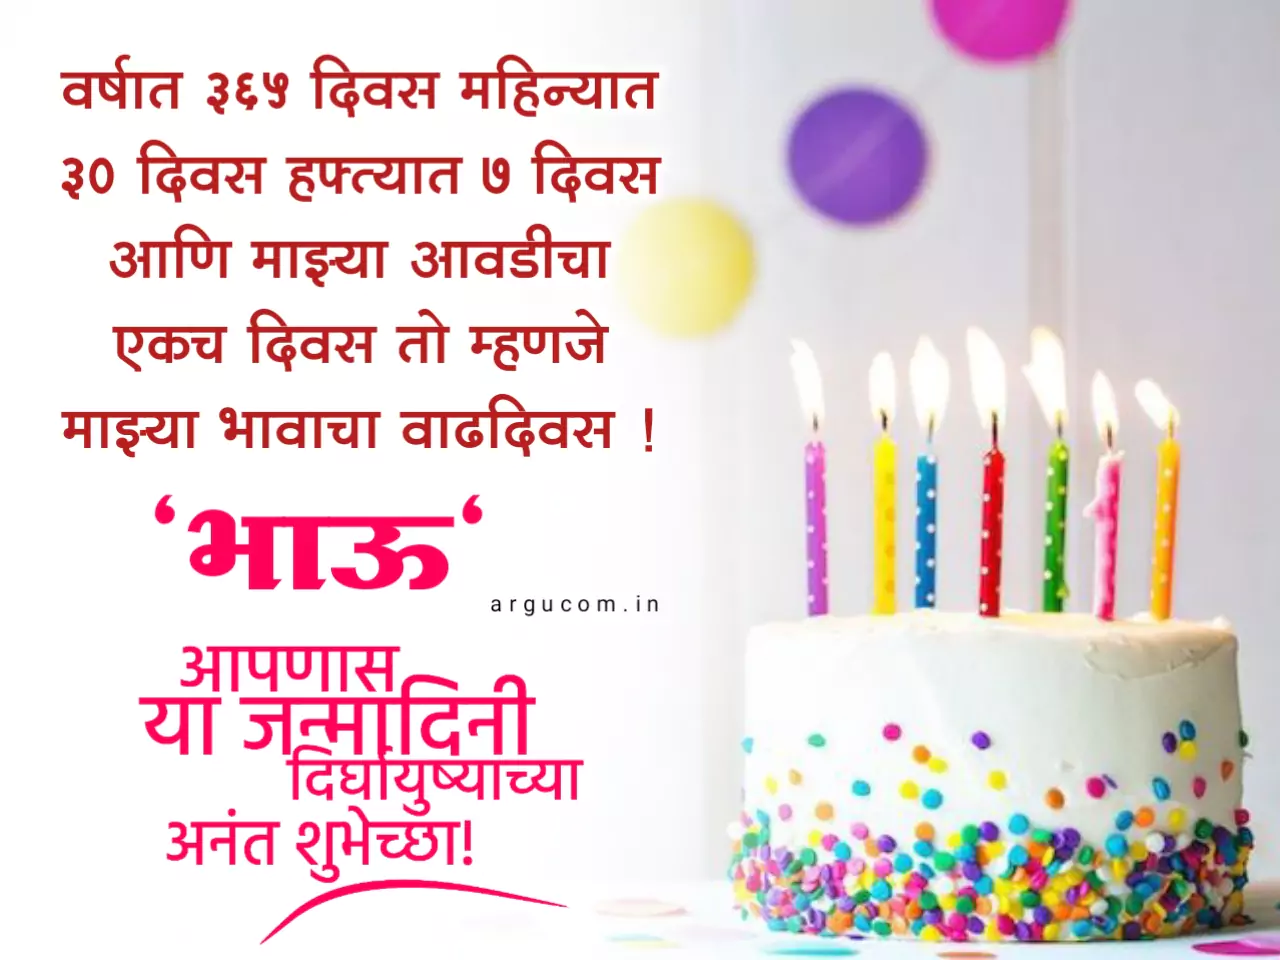 Birthday wishes for brother in marathi , भावाला वाढदिवस शुभेच्छा मराठी